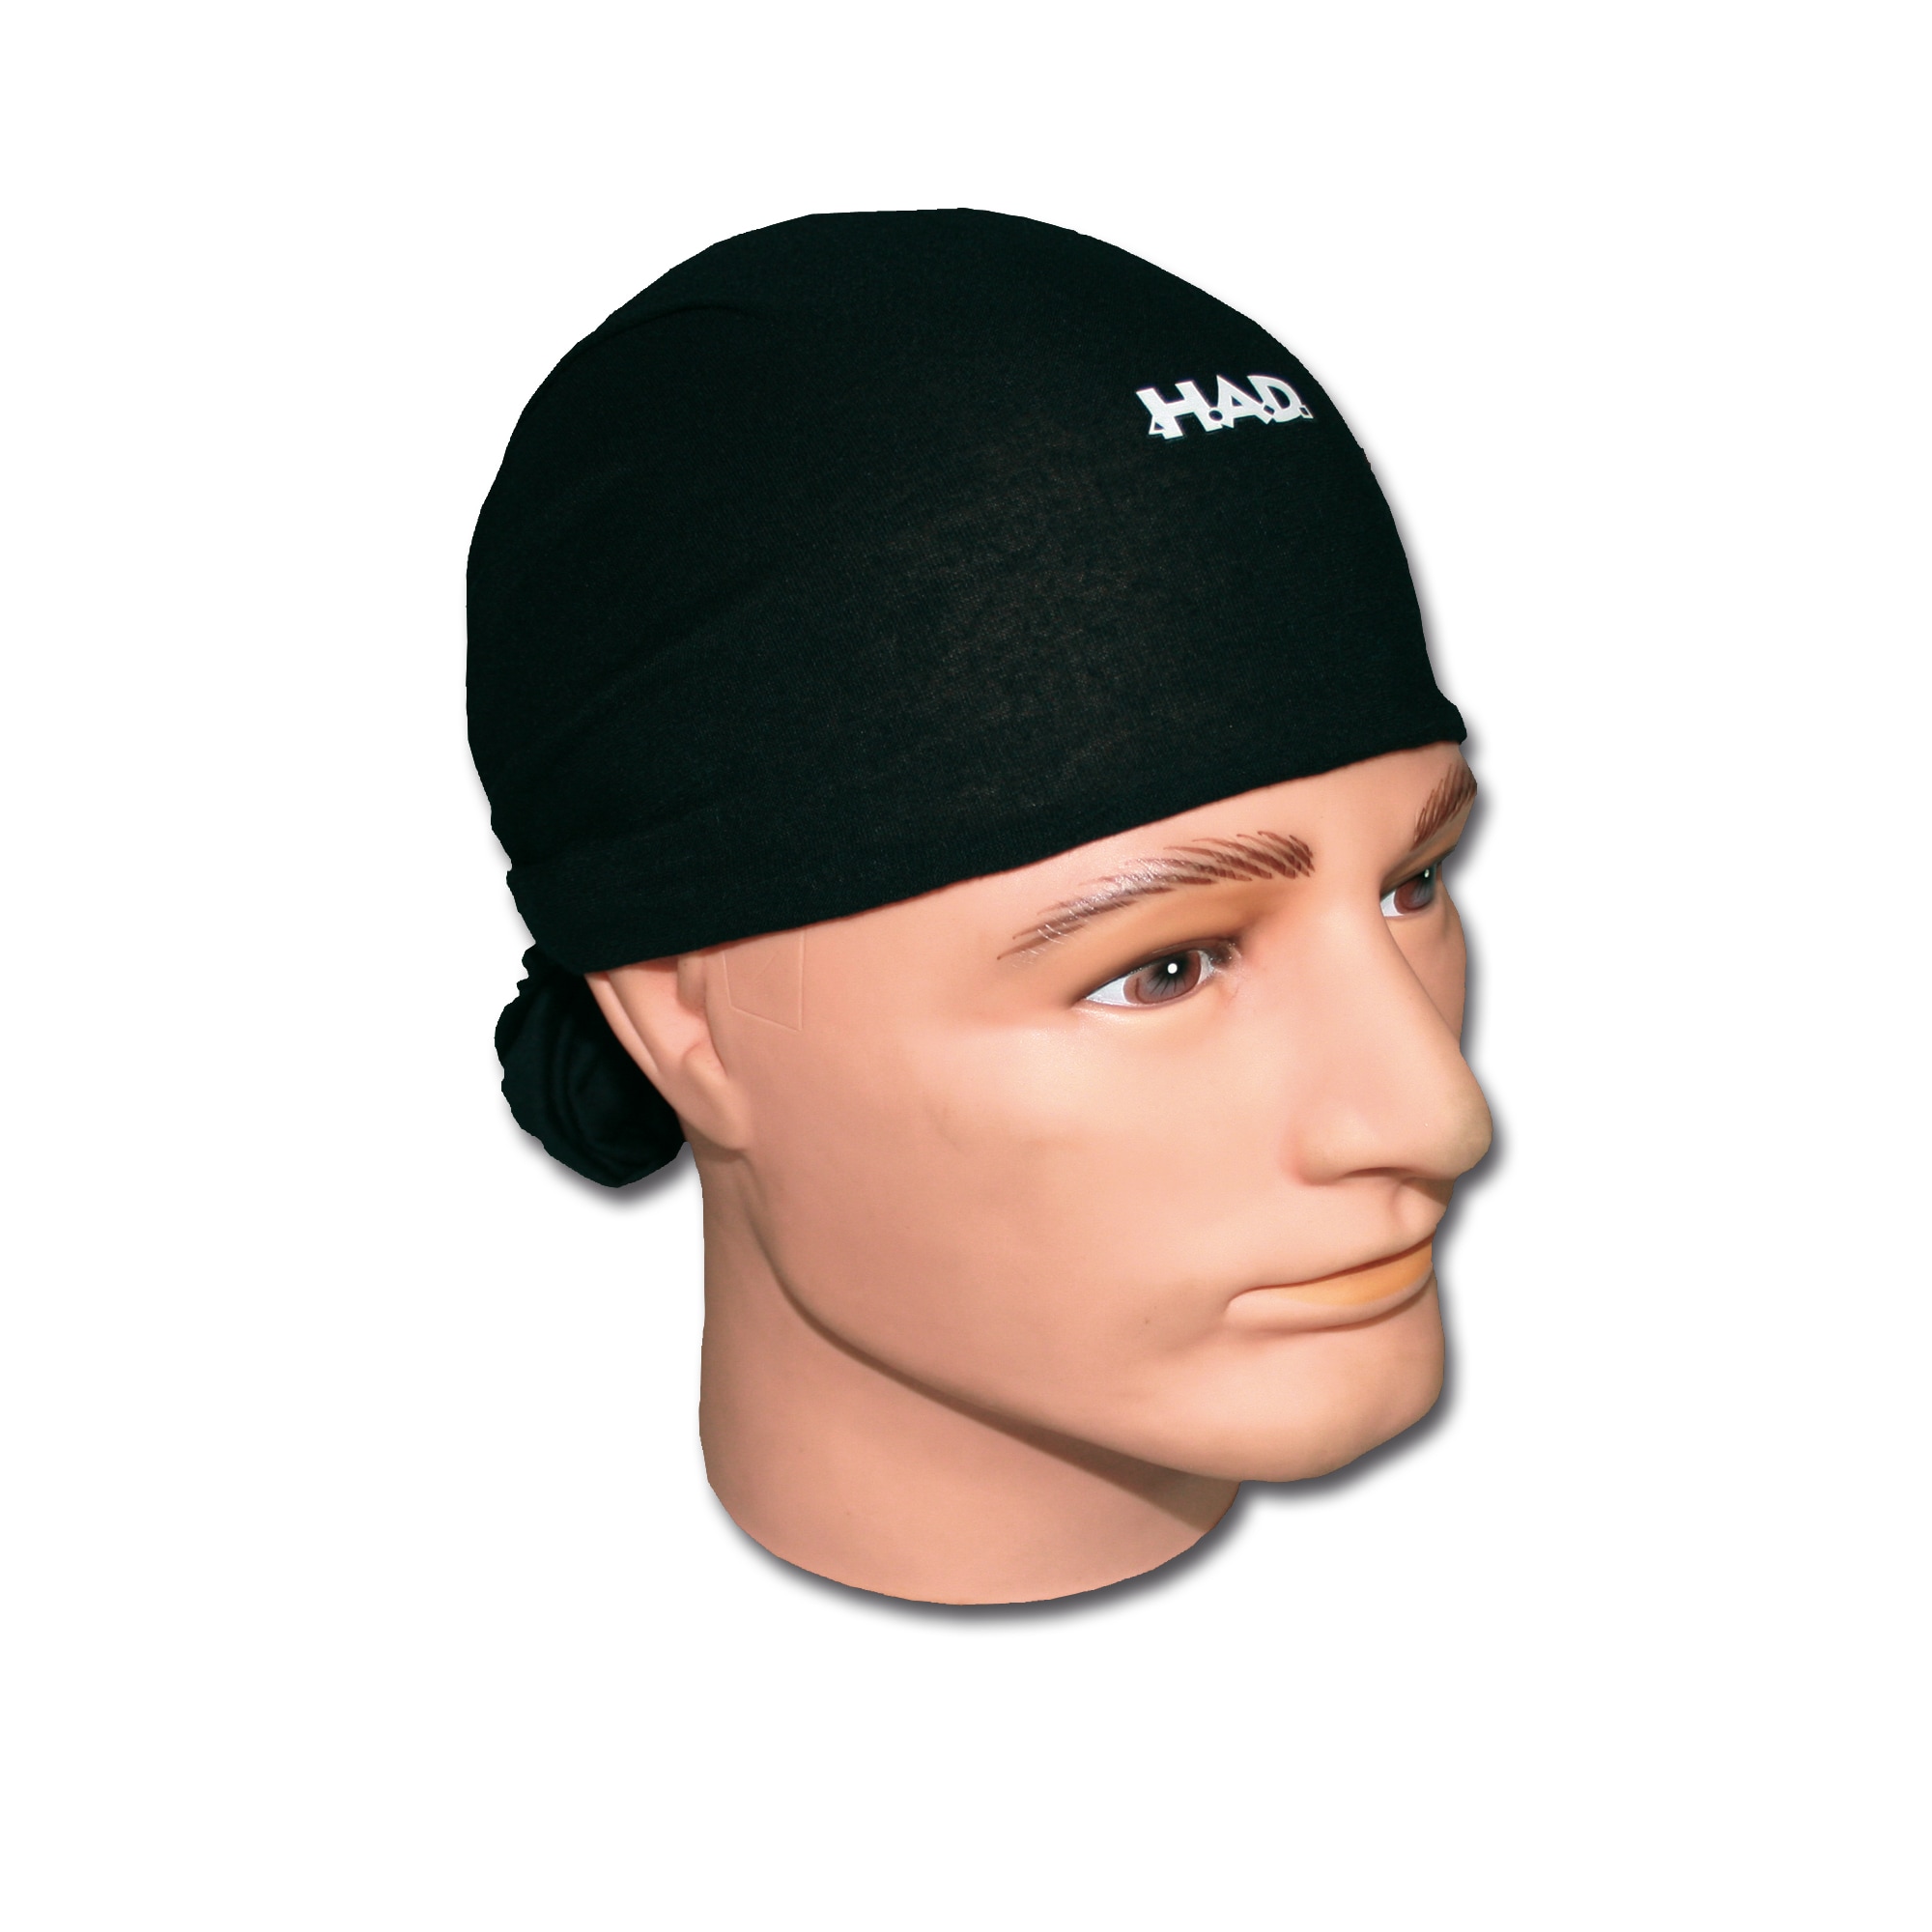 Headwrap HAD black | Headwrap HAD black | Bandanas | Head Gear | Clothing